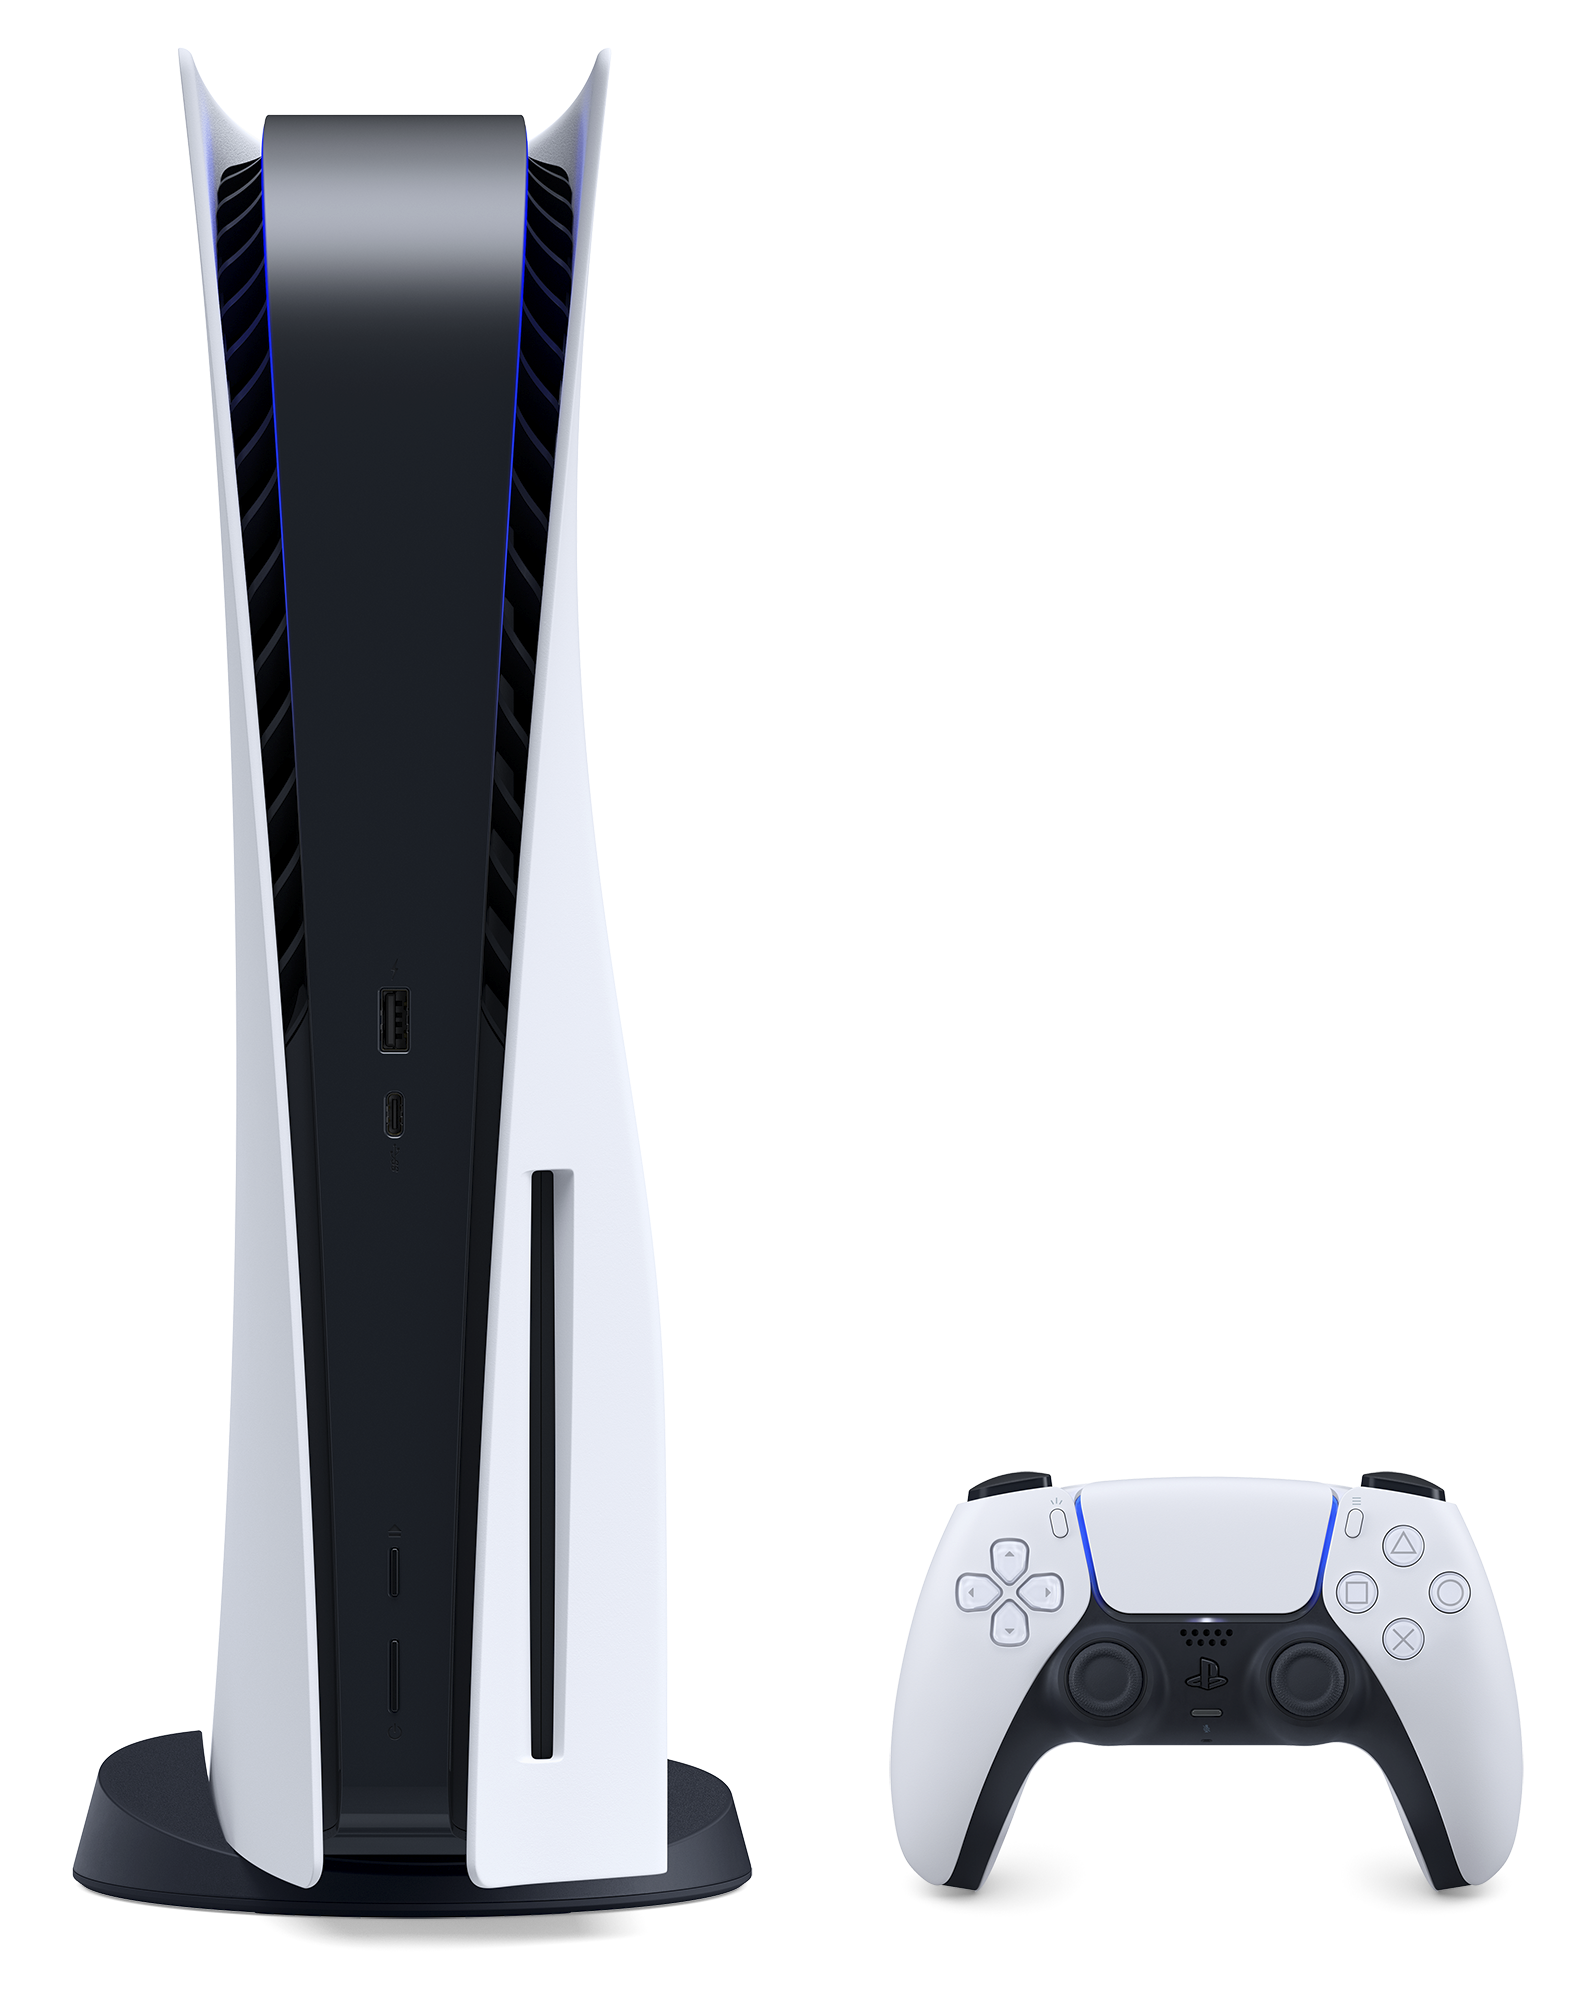 Consola PlayStation 5 - Imagen del producto en vertical